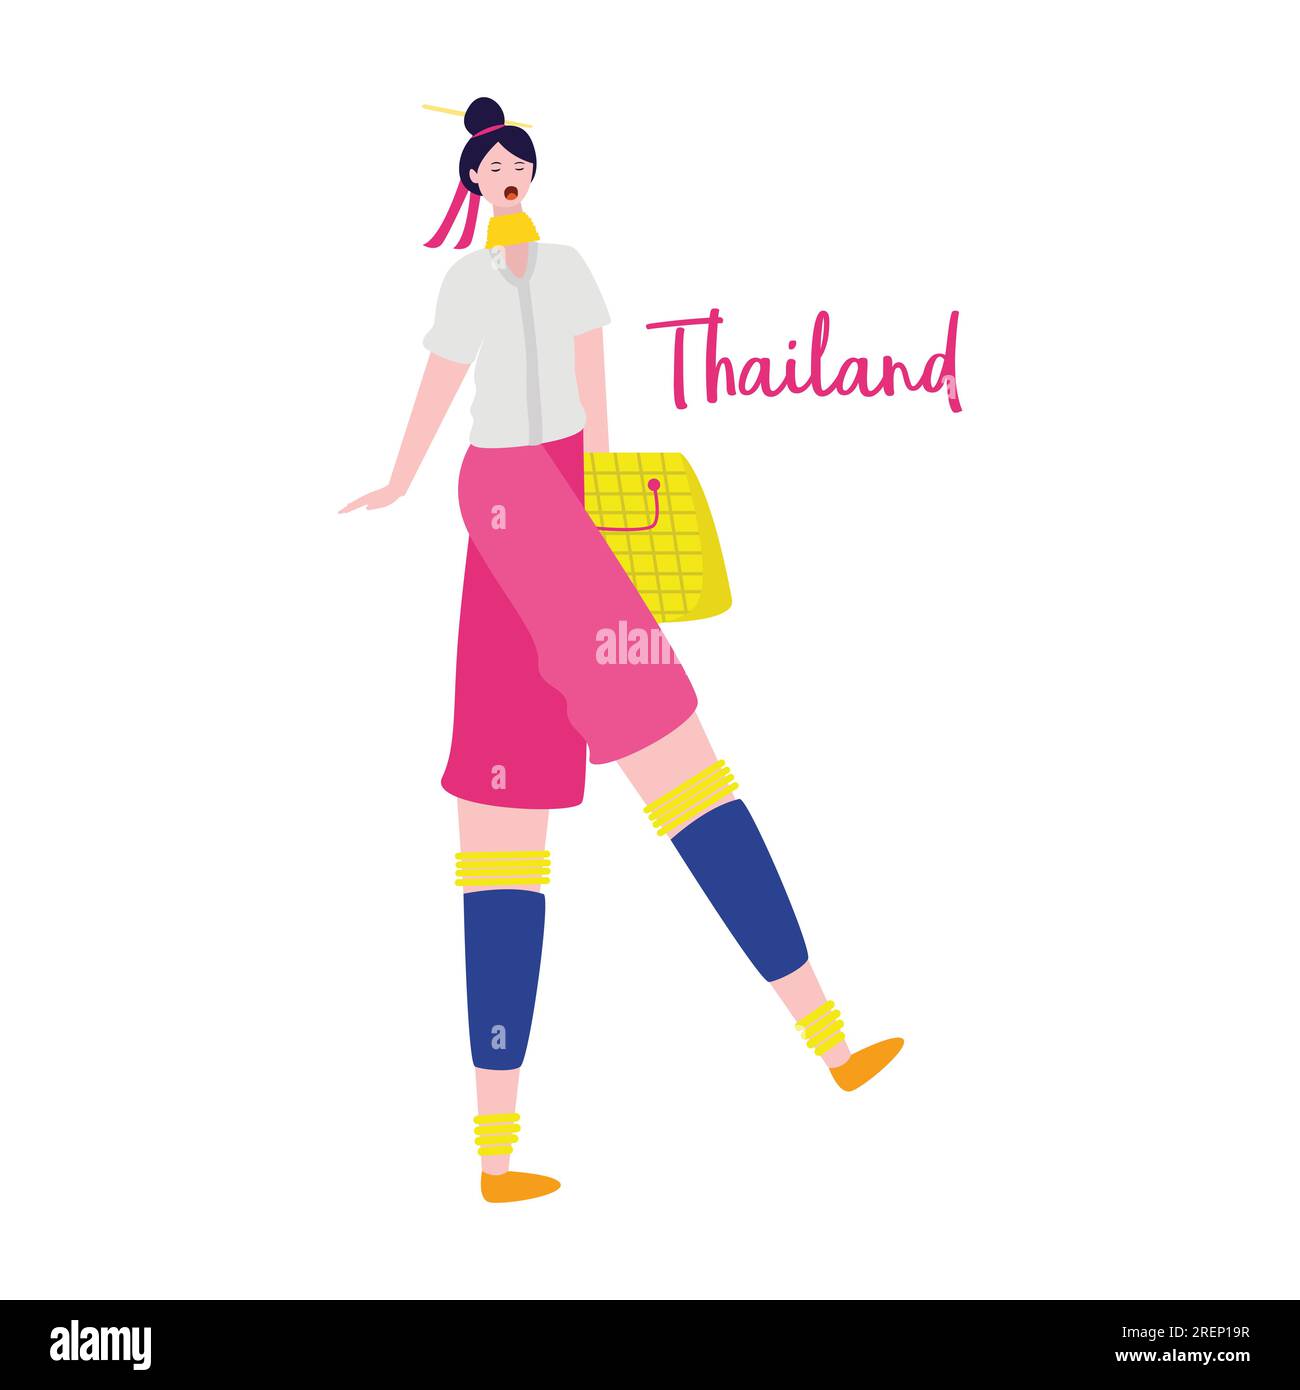 bellissima ragazza che indossa abiti casual eleganti con accessori eleganti e borsa e viaggia in thailandia Illustrazione Vettoriale